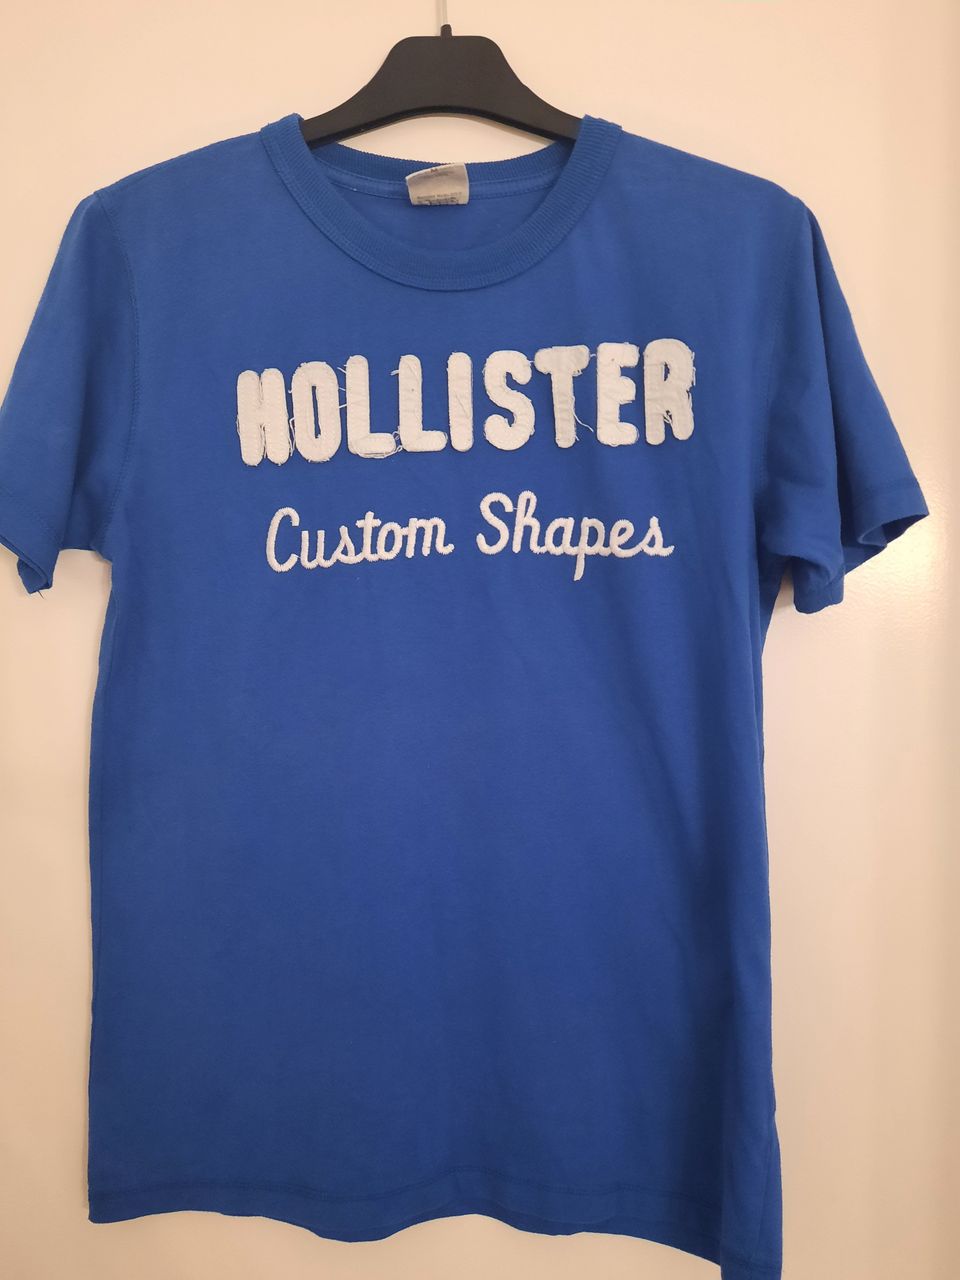 Miesten Hollister-merkkinen t-paita.